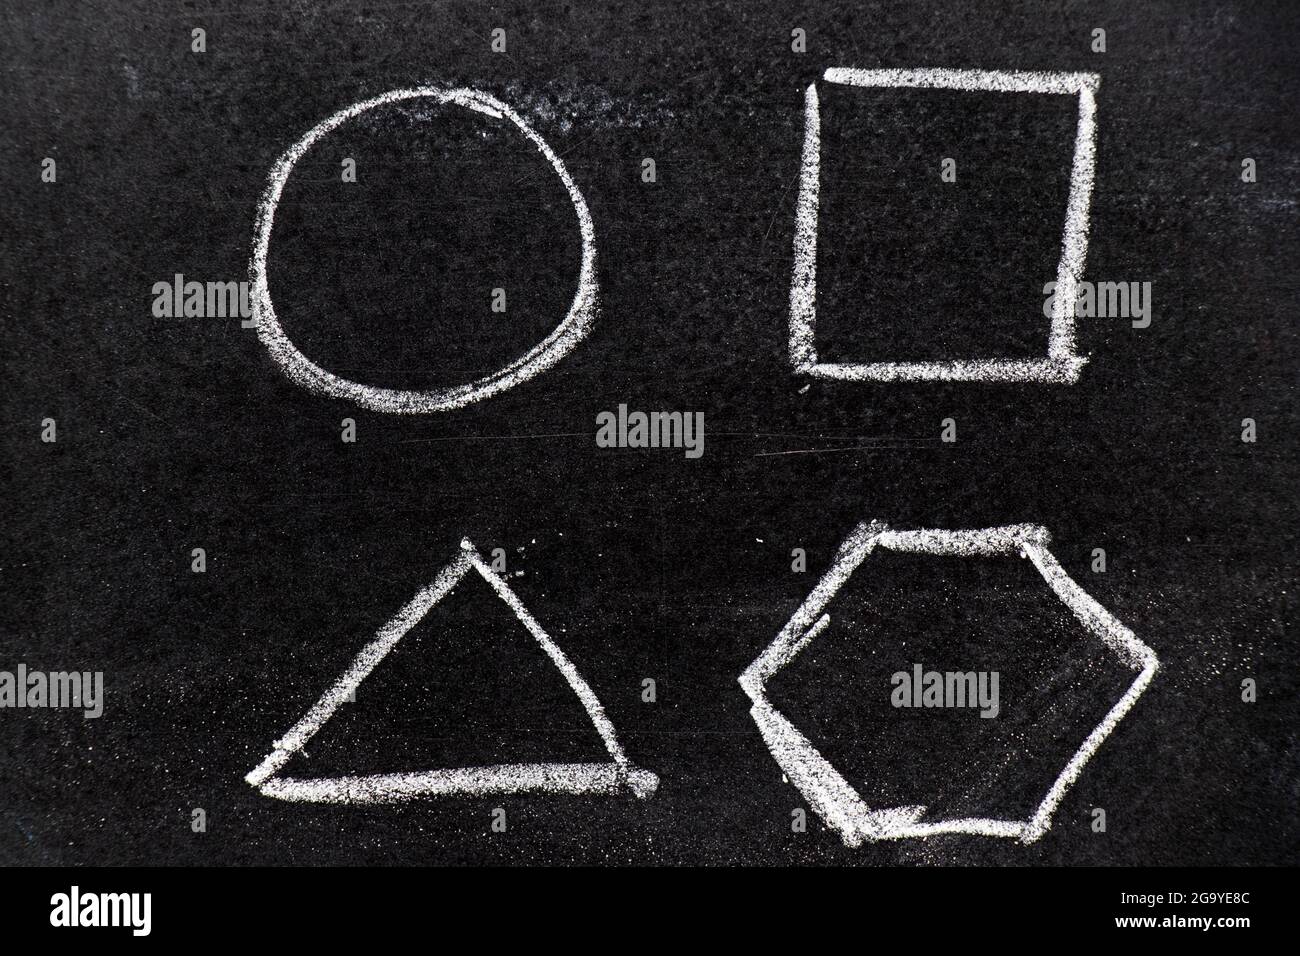 Dibujo a mano de tiza como forma geométrica (círculo, triángulo, cuadrado, hexágono) sobre fondo negro de tablero Foto de stock